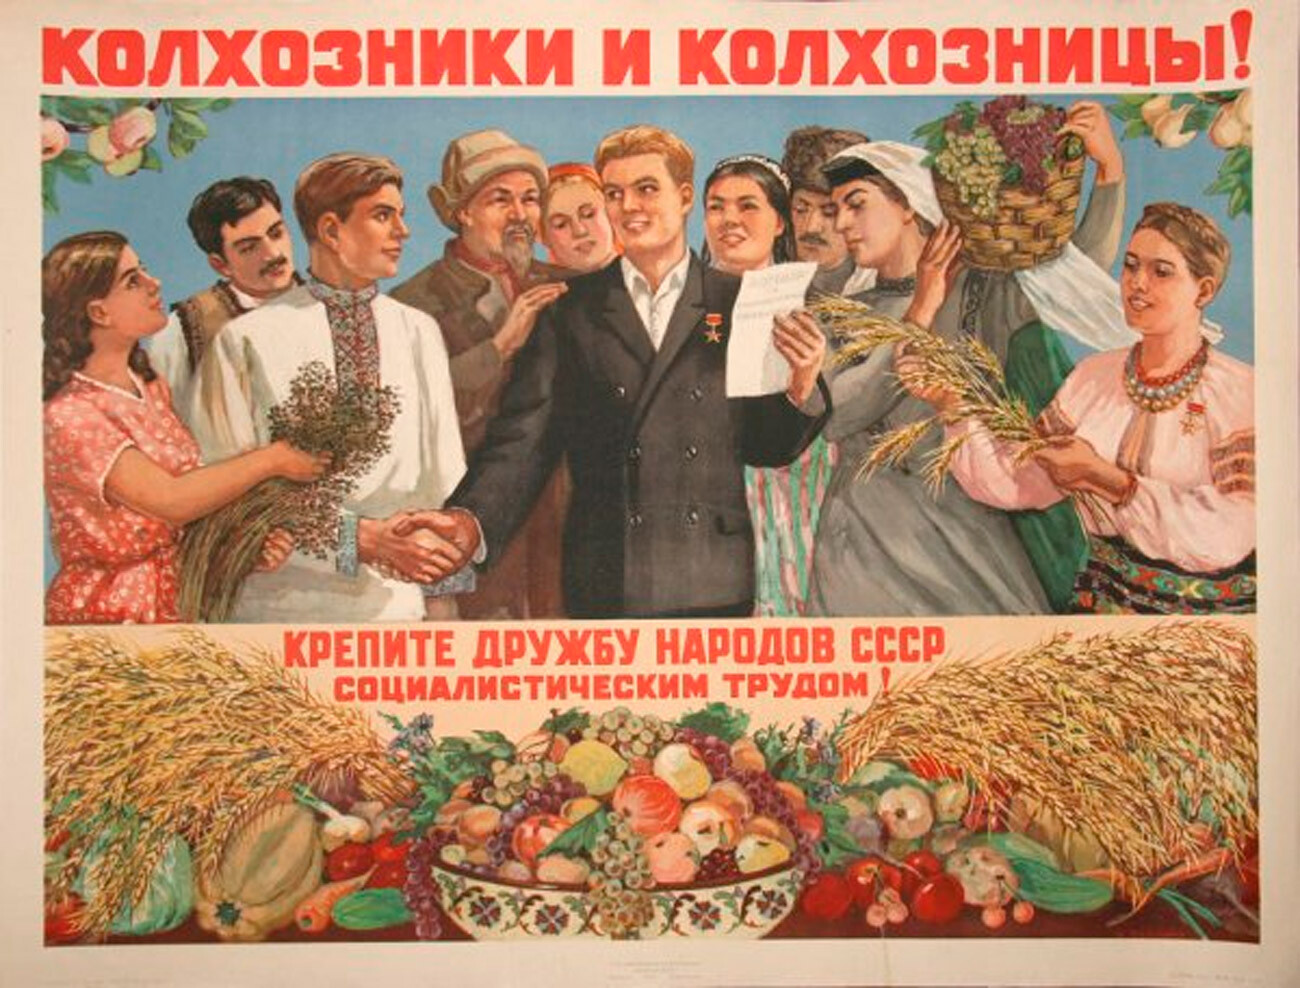 Kolkhoziens (fermiers collectifs) et kolkhoziennes ! Renforcez l'amitié du peuple soviétique par le travail socialiste !